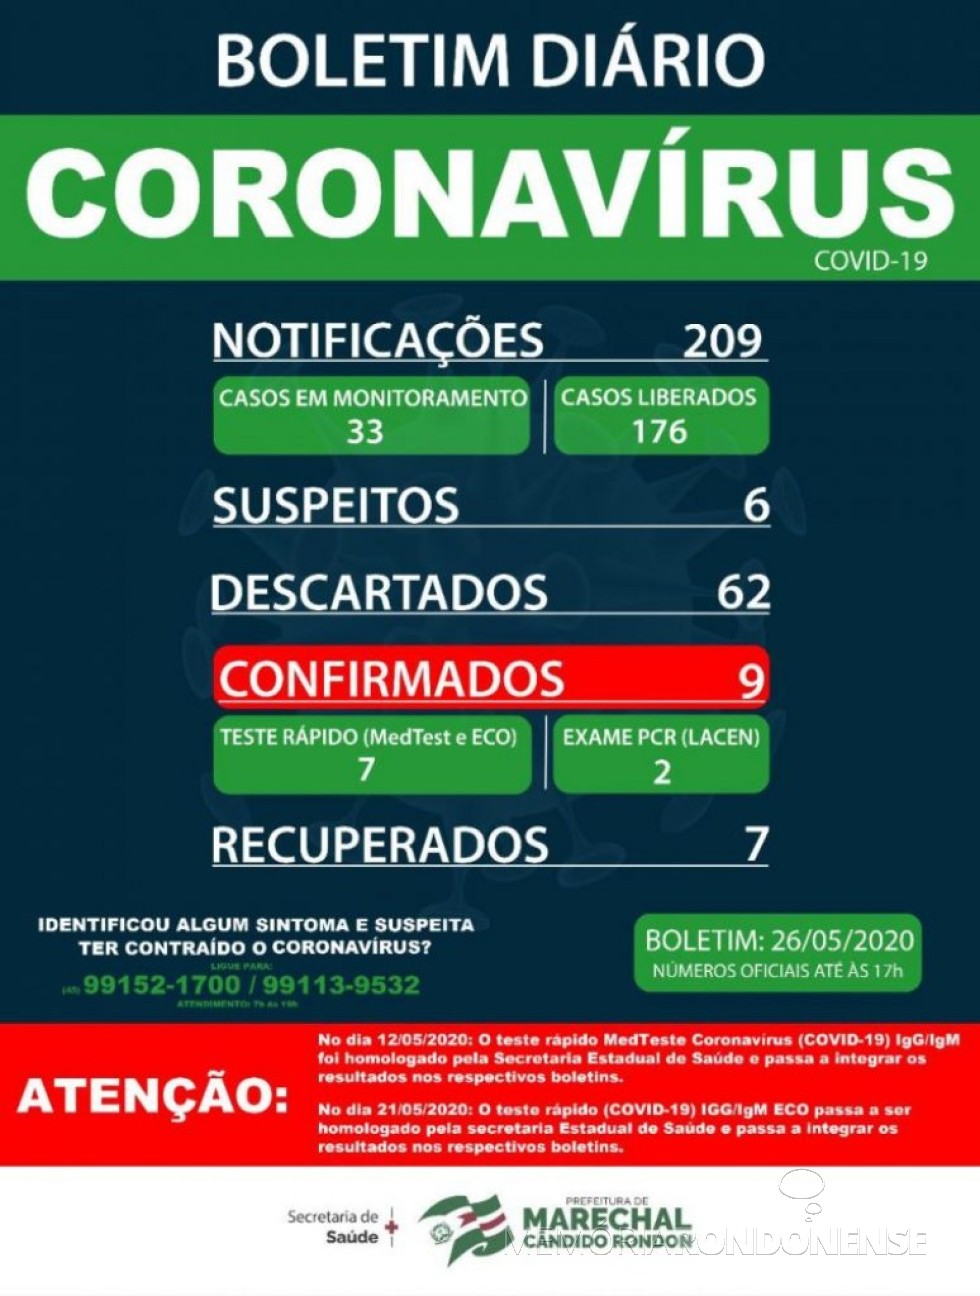 Boletim epidemiológico da Secretaria de Saúde de Marechal Cândido Rondon com a confirmação de 9 casos positivos de coronavírus no município.
Imagem: Acervo Imprensa PM-MCR - FOTO 12 - 